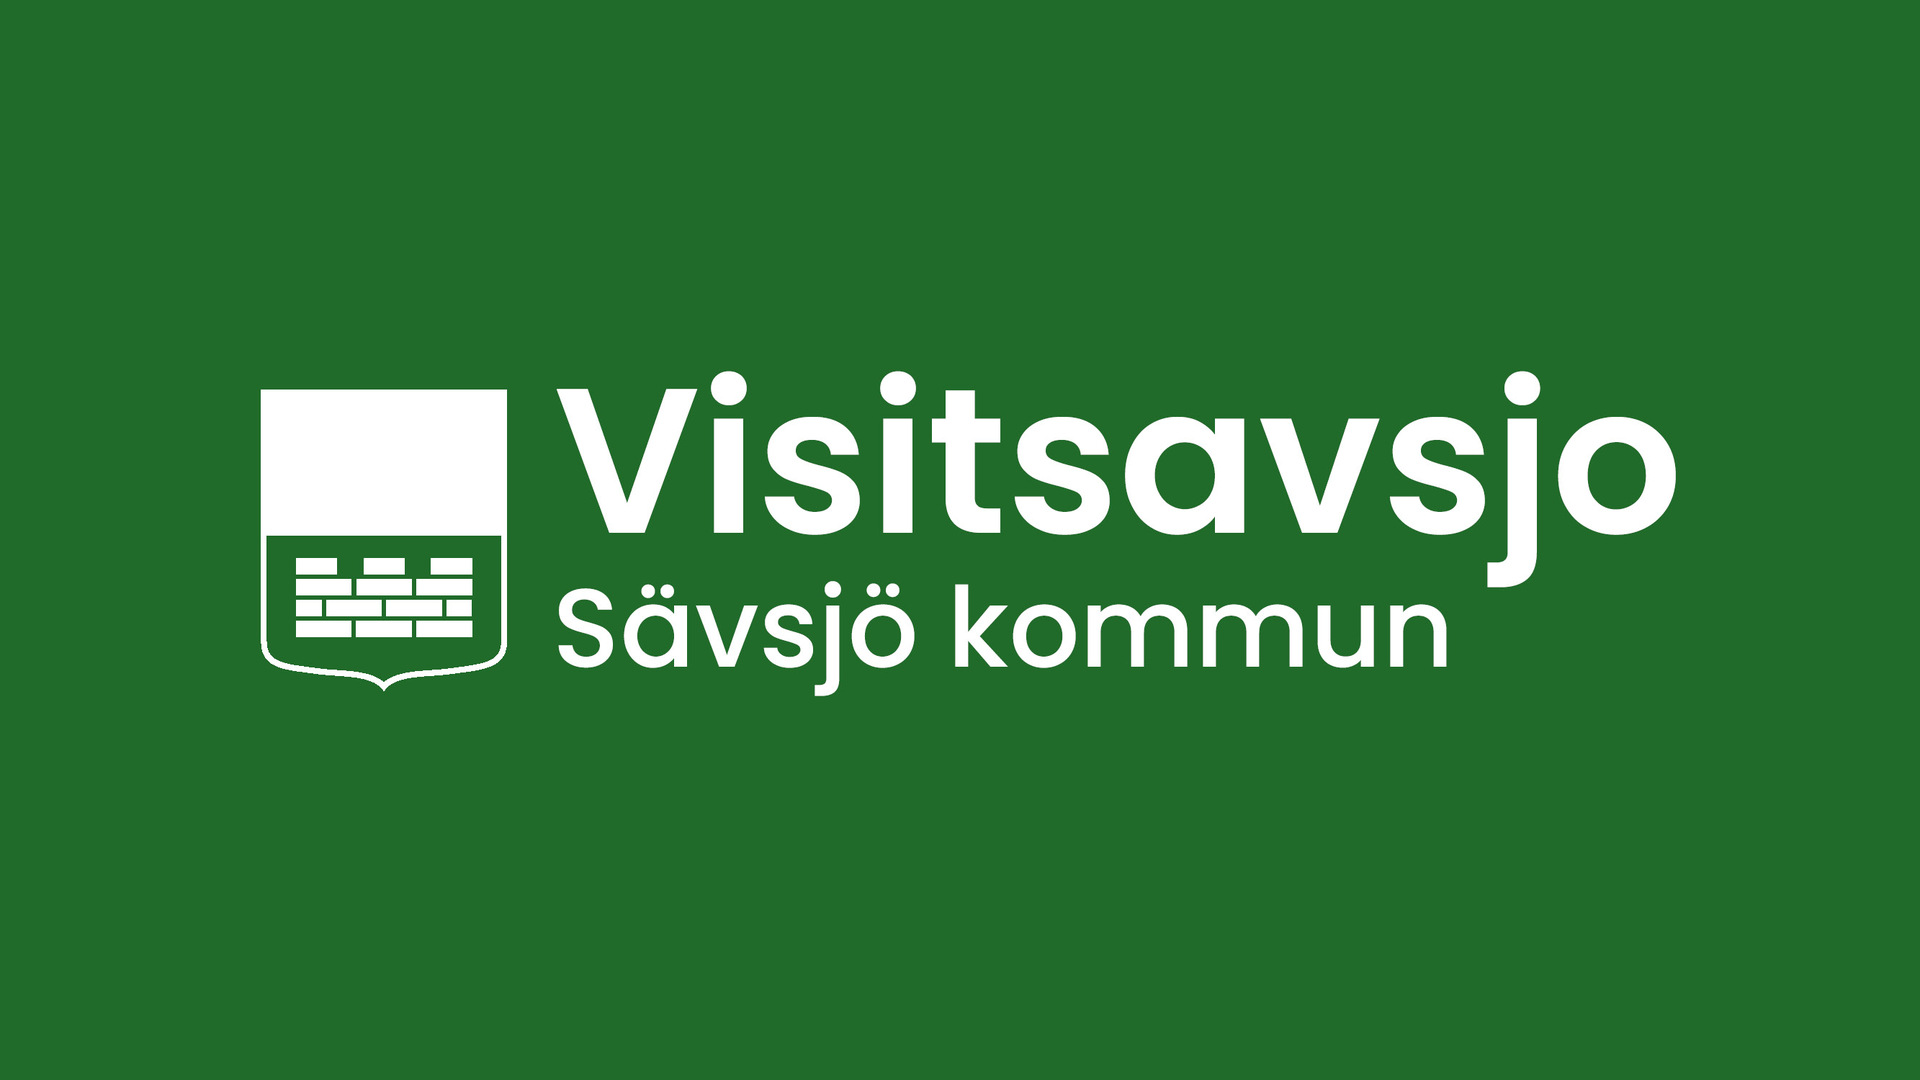 Logo Visitsavsjo på grön bakgrund.